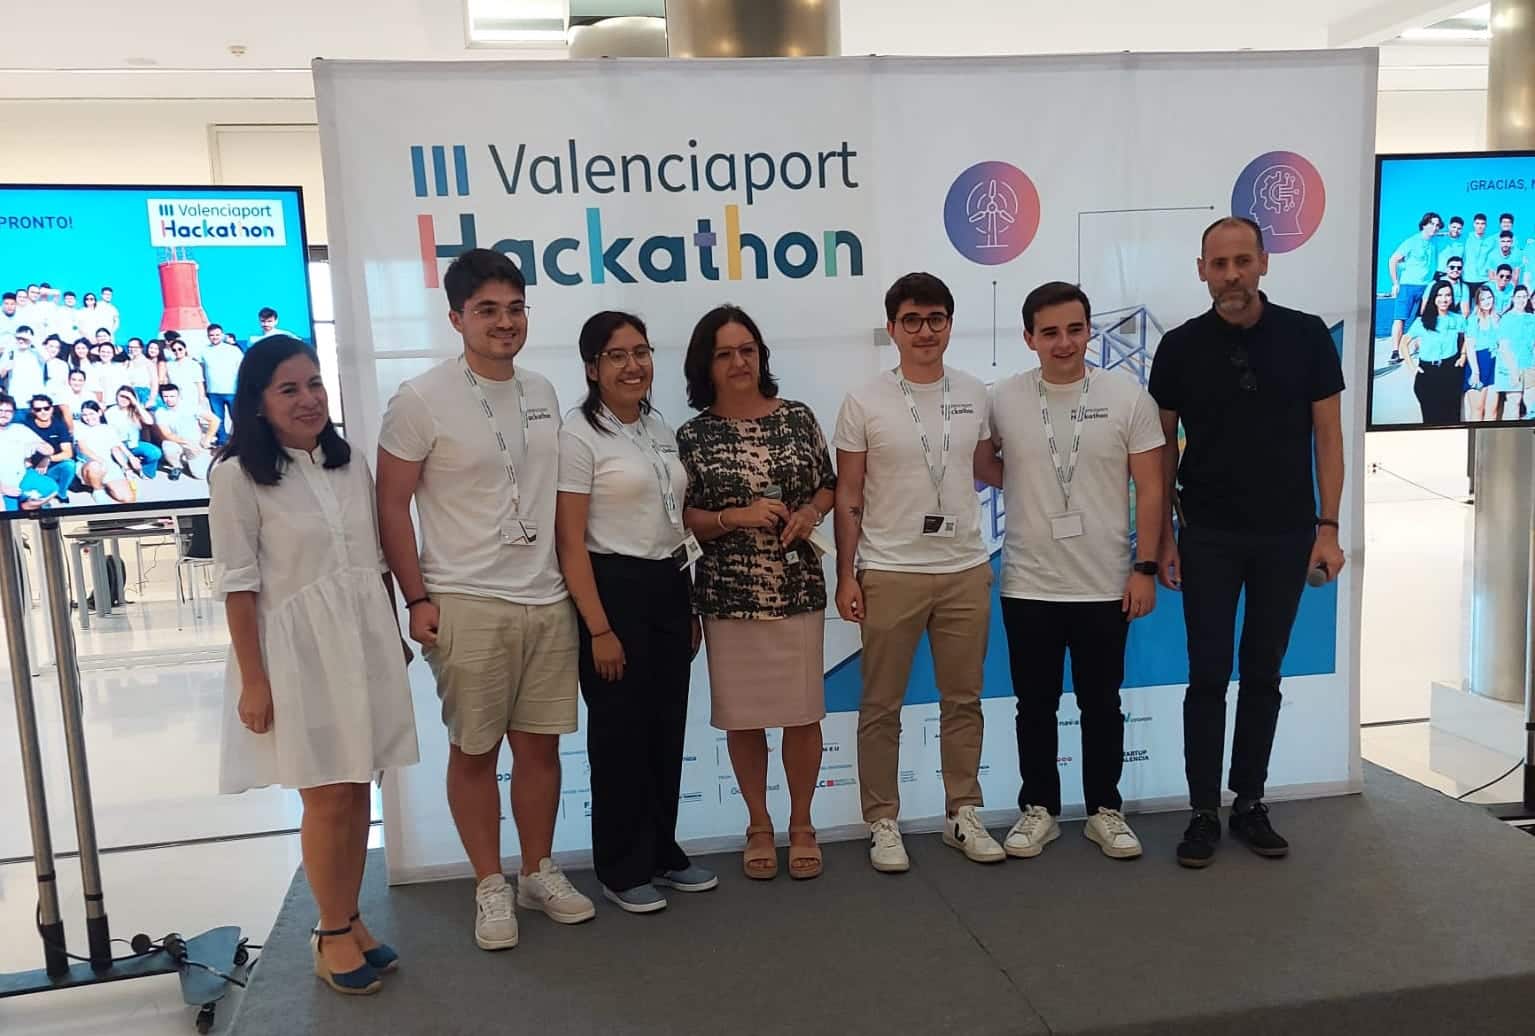 La solución de “Seanergy” se hace con el primer premio del III Valenciaport Hackathon